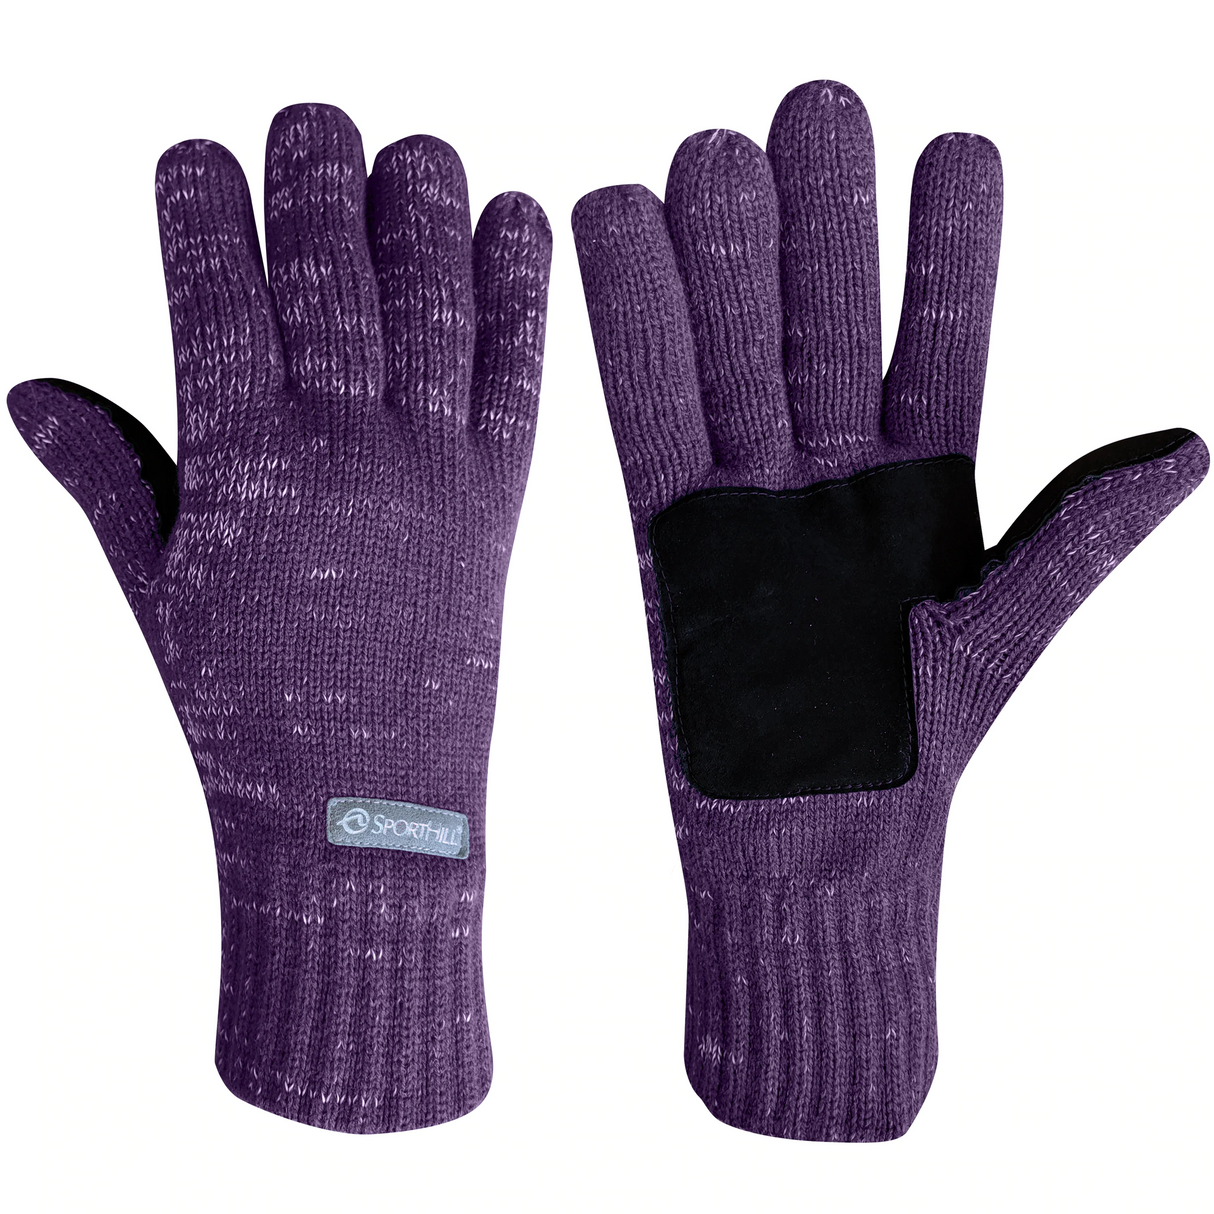 Sporthill Reflective Knit Gloves 